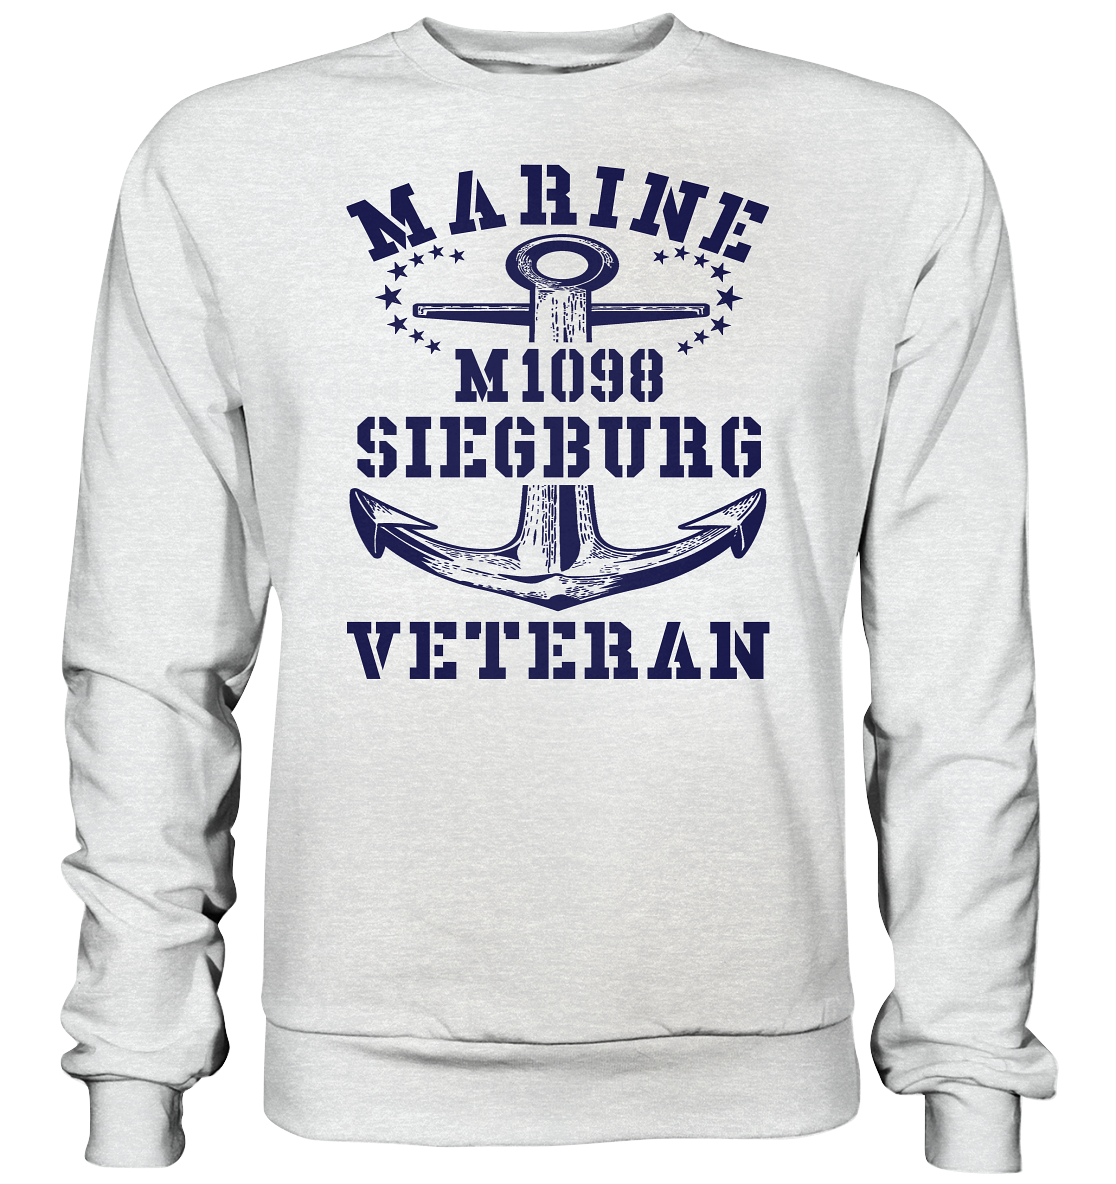 M1098 SIEGBURG Marine Veteran - Premium Sweatshirt